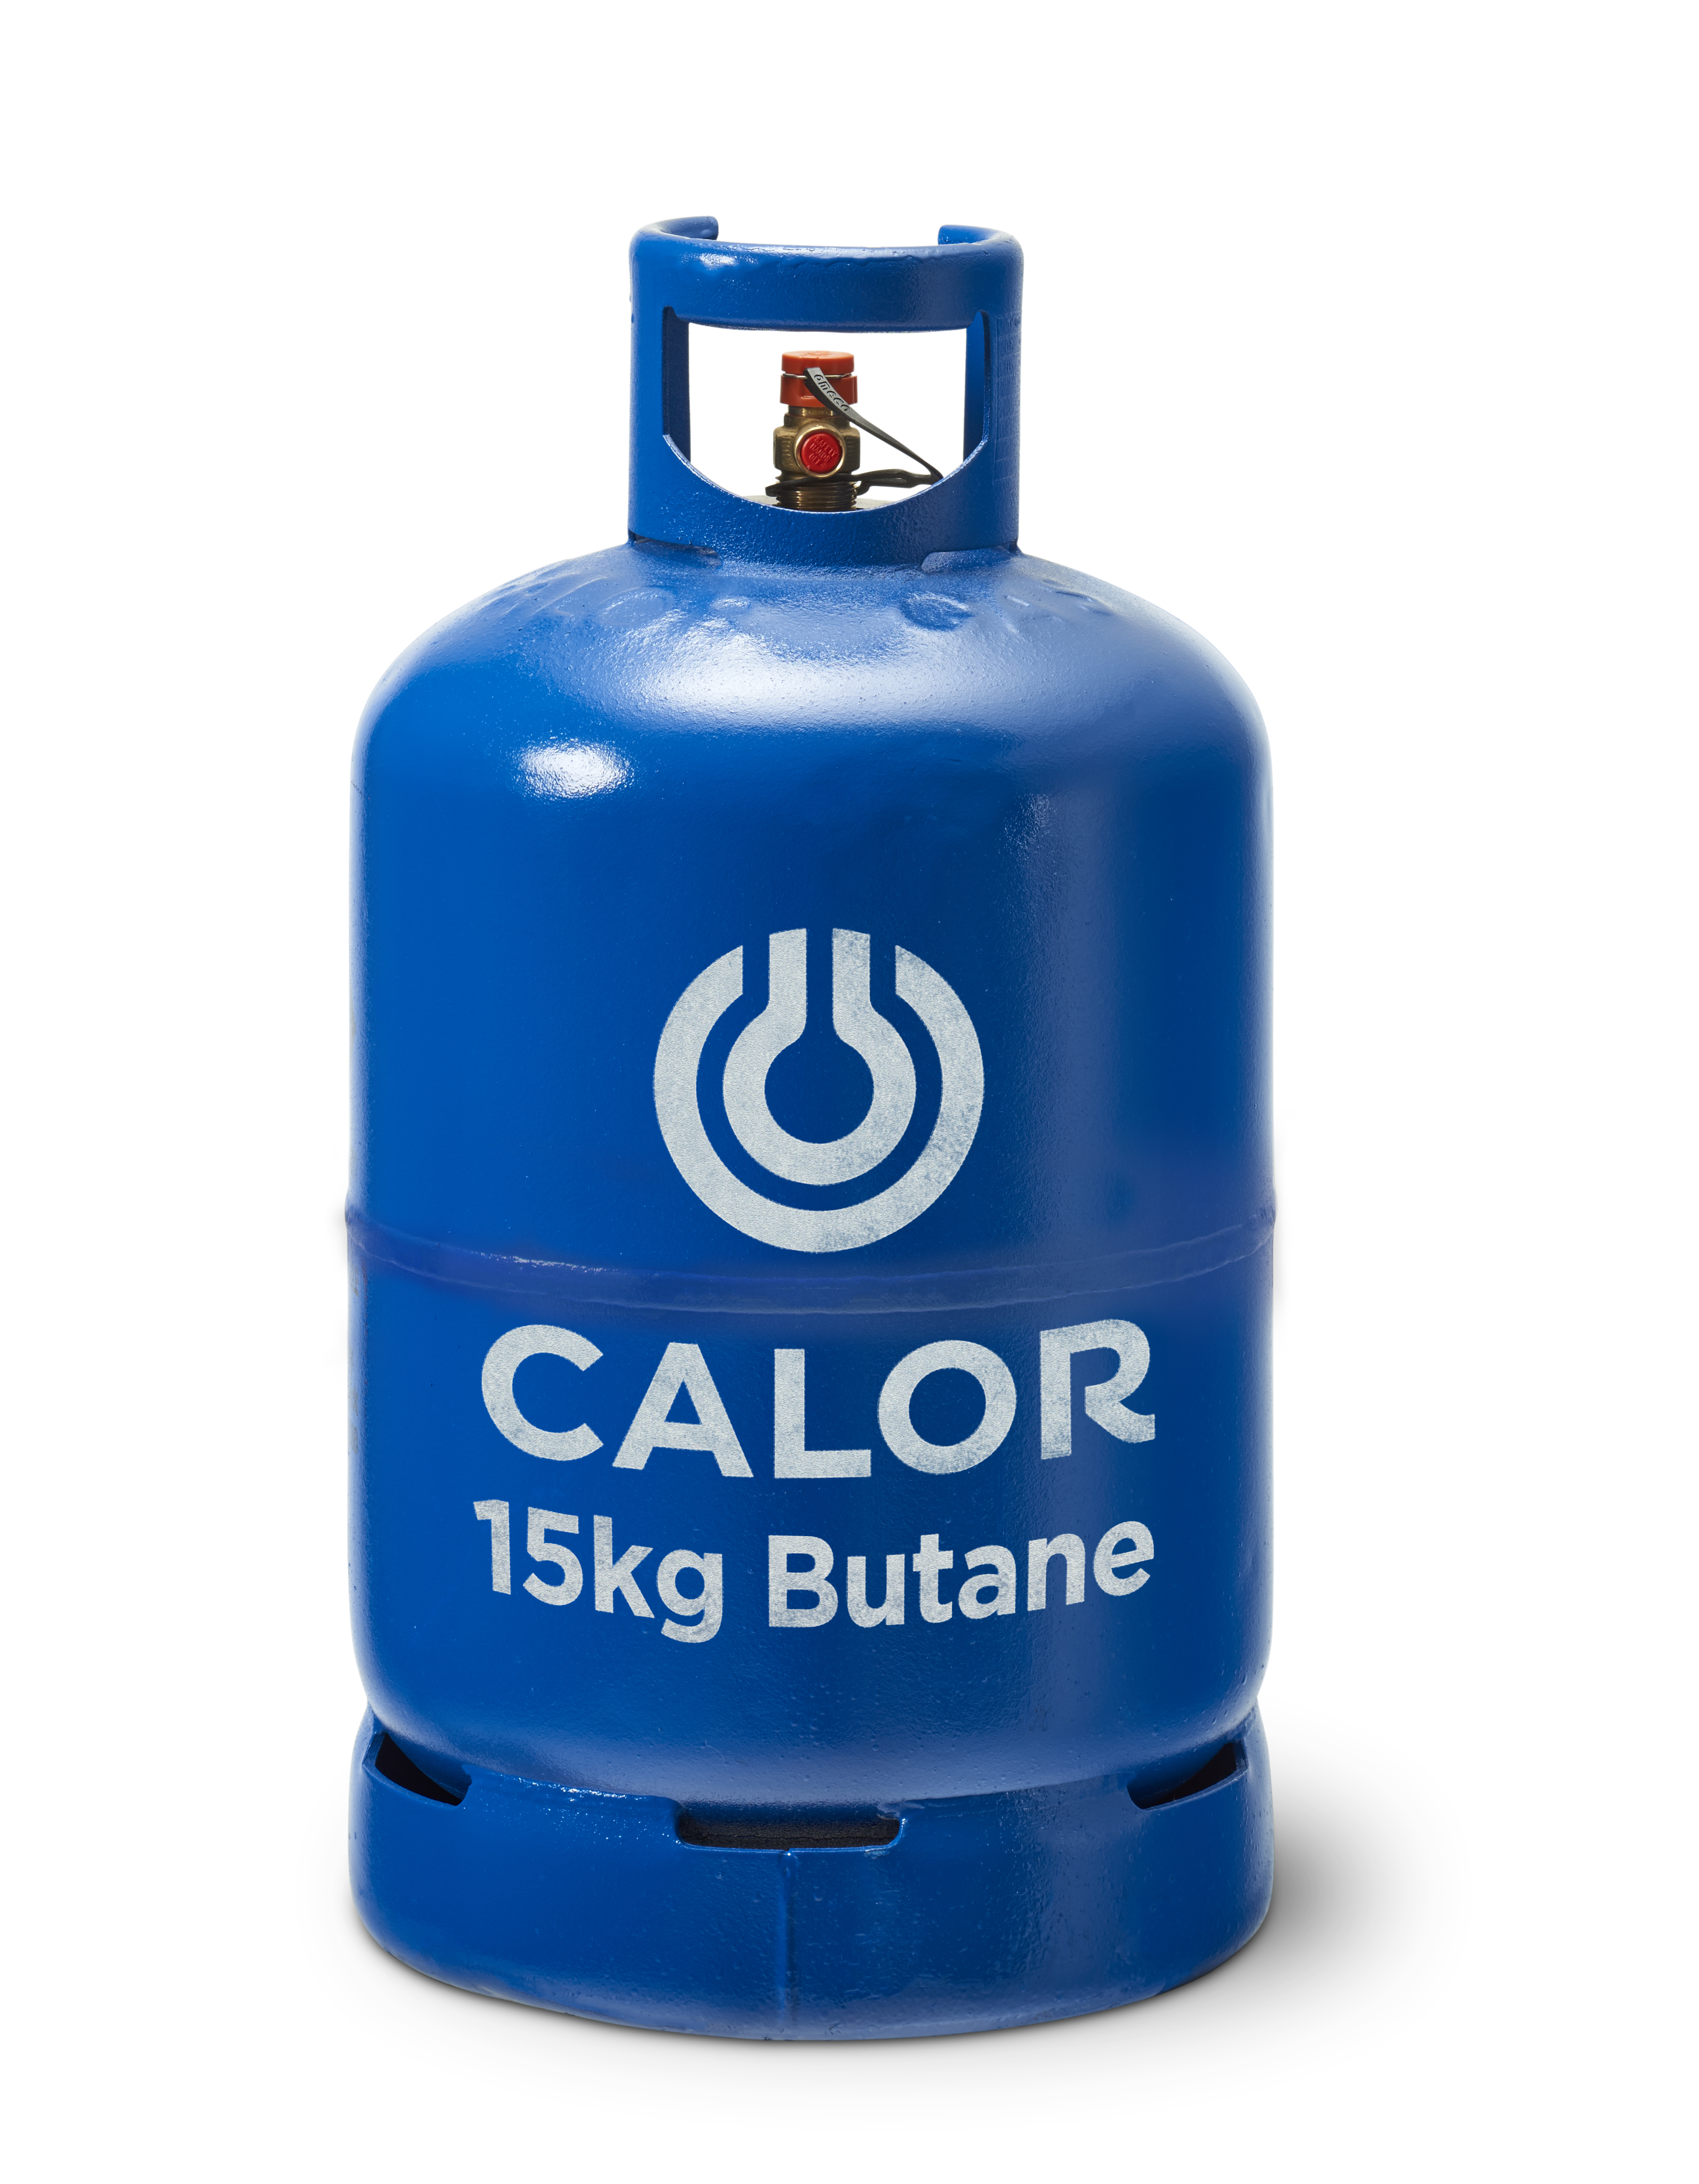 15kg Butane Calor Gas Bottles Worthing